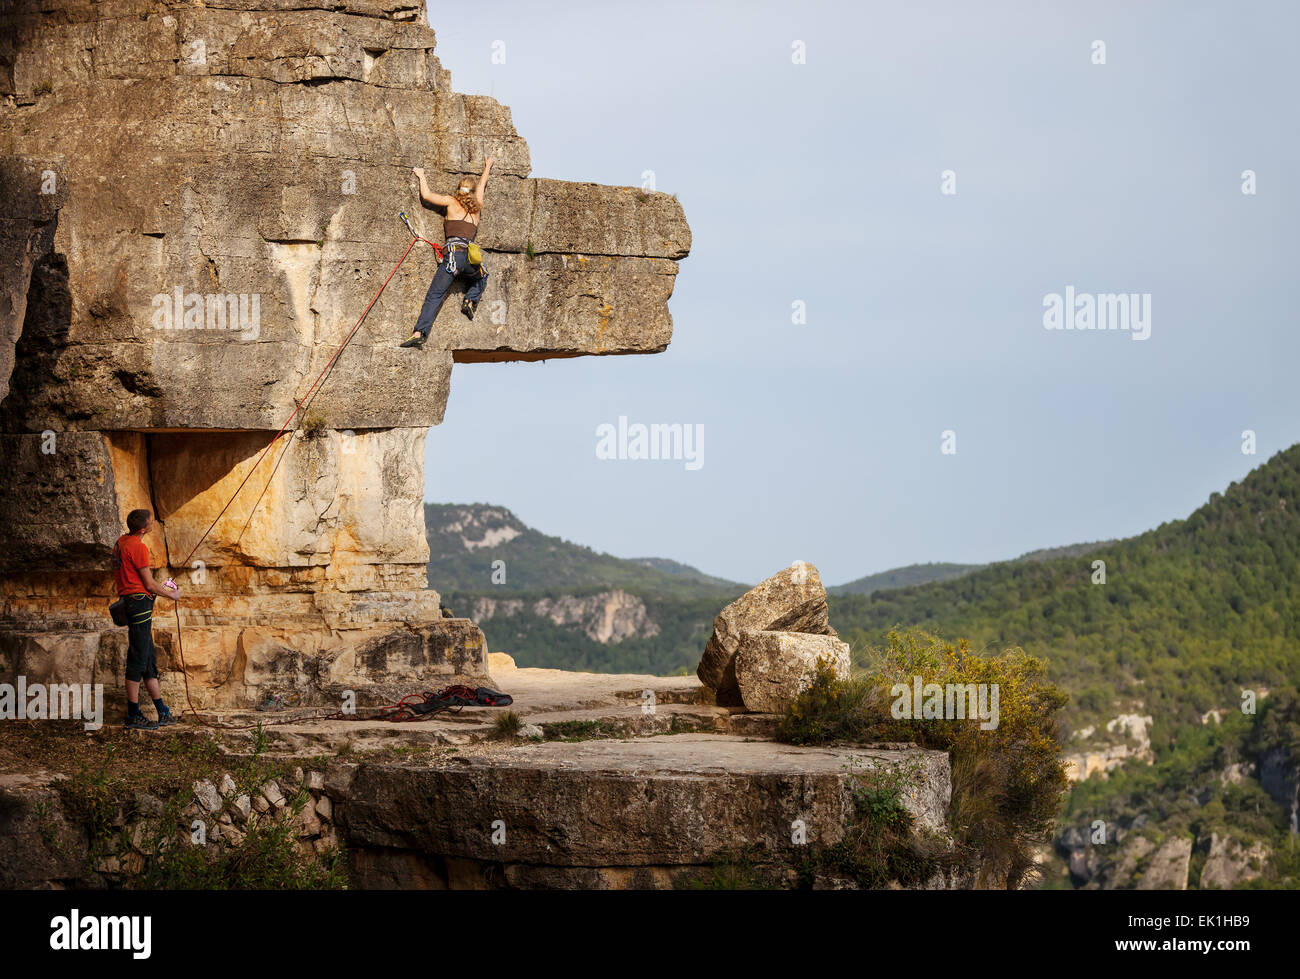 Junge Frau Klettern auf Felsen, männlichen Partner sichern Stockfoto